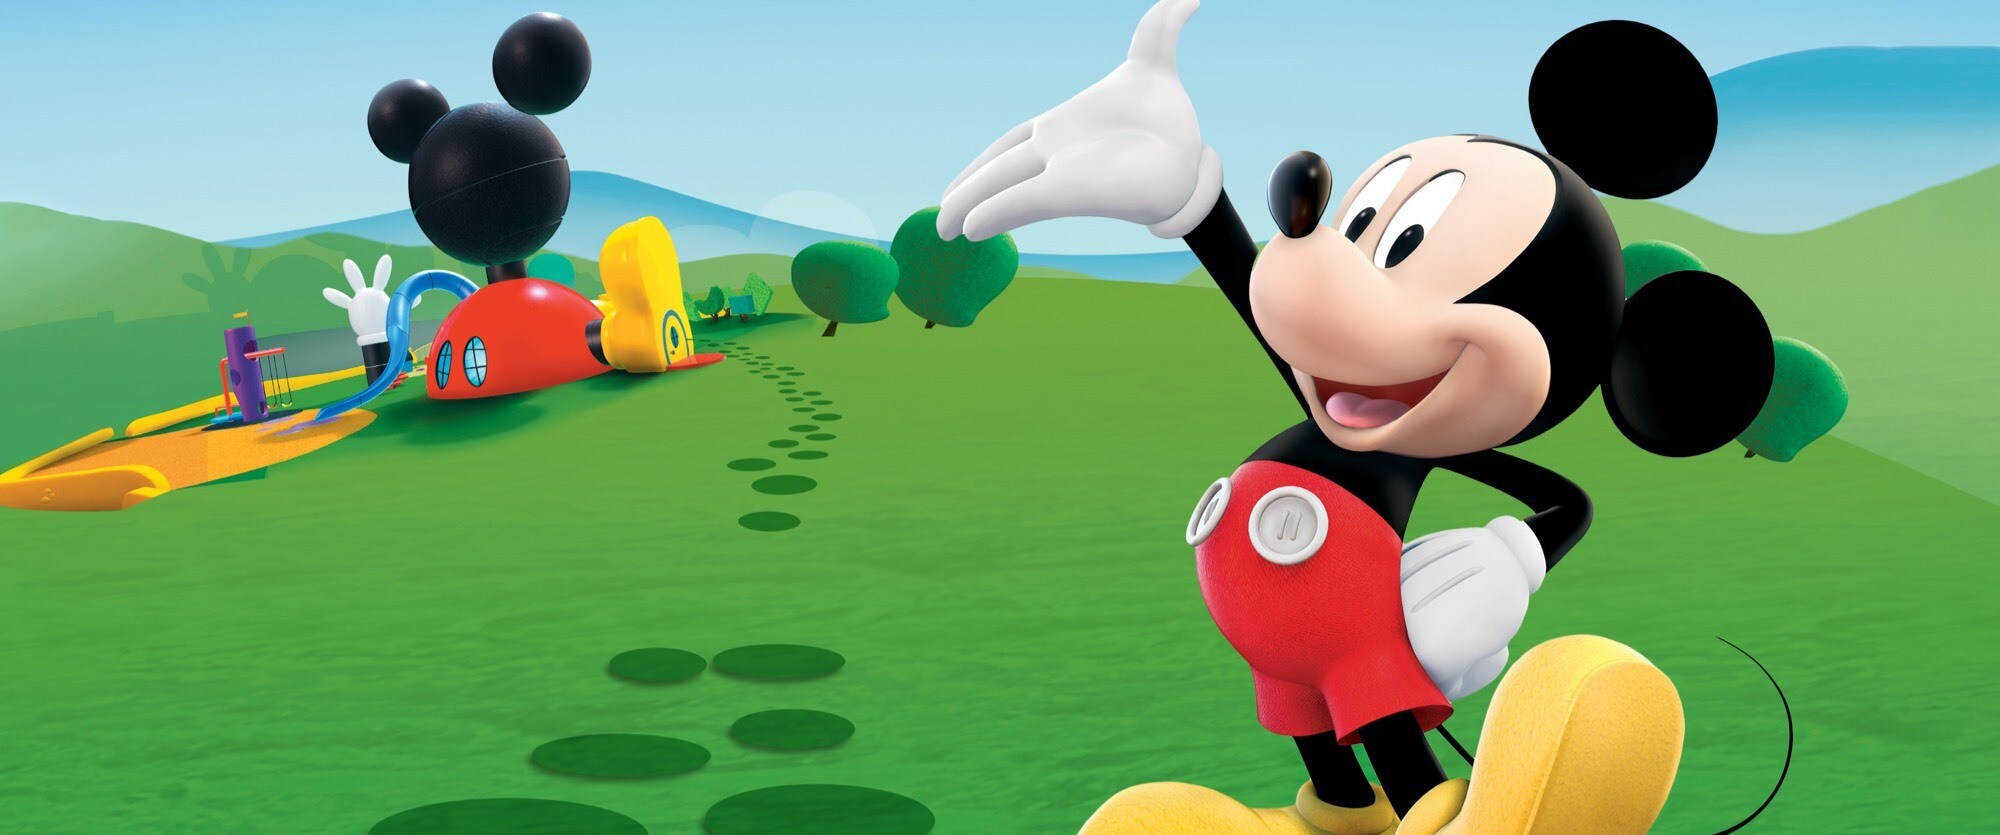 Ambiente instalaciones participar La casa de Mickey Mouse: la nueva serie de Disney+ lleva a los niños a  vivir aventuras en tierras lejanas | Disney Latino